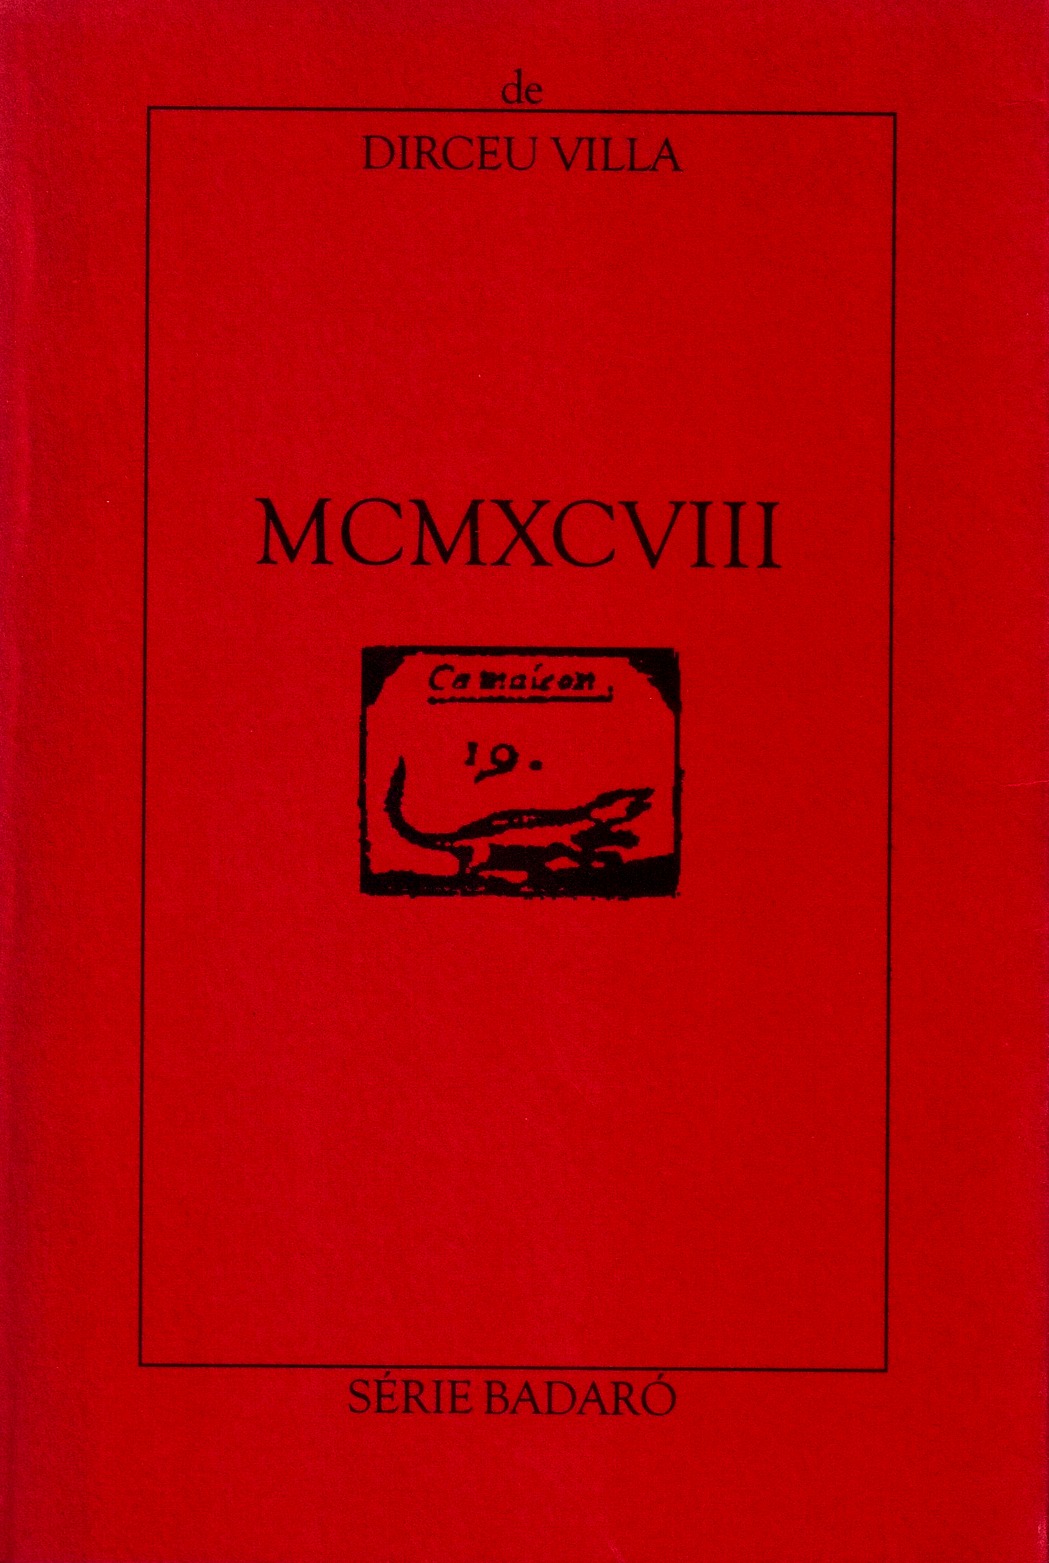 MCMXCVIII